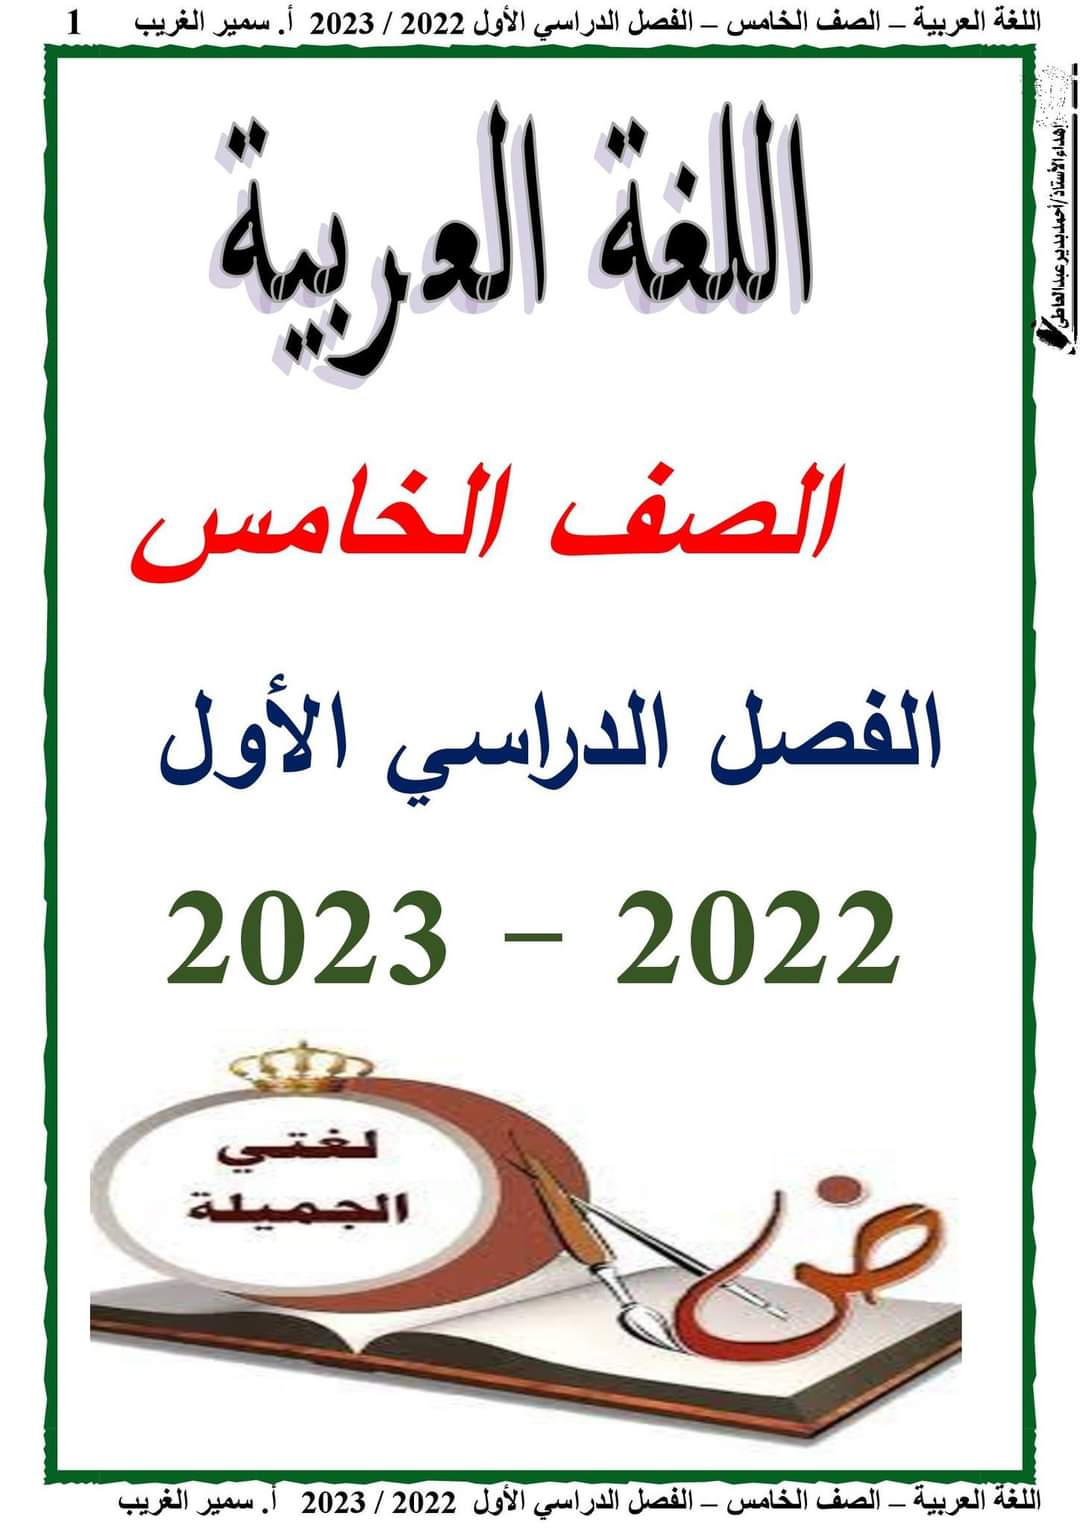 تحميل مذكرة لغة عربية كاملة خامسة ابتدائي نظام جديد الترم الاول 2023 - تحميل مذكرات سمير الغريب